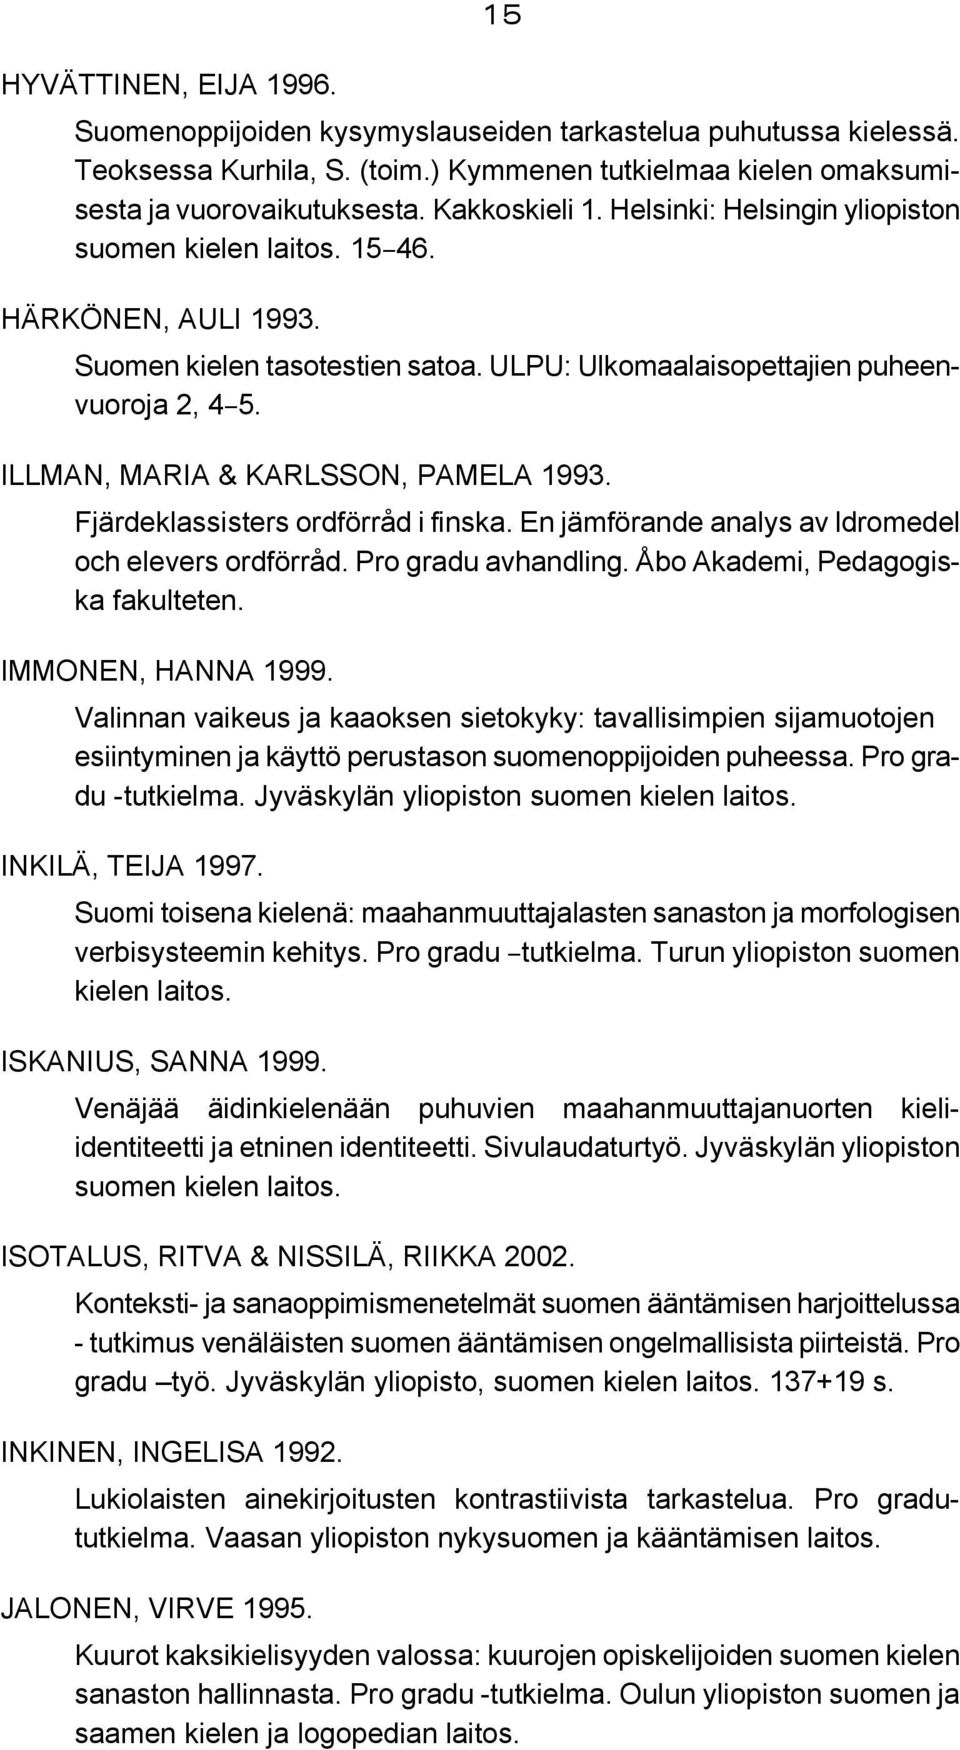 ILLMAN, MARIA & KARLSSON, PAMELA 1993. Fjärdeklassisters ordförråd i finska. En jämförande analys av ldromedel och elevers ordförråd. Pro gradu avhandling. Åbo Akademi, Pedagogiska fakulteten.